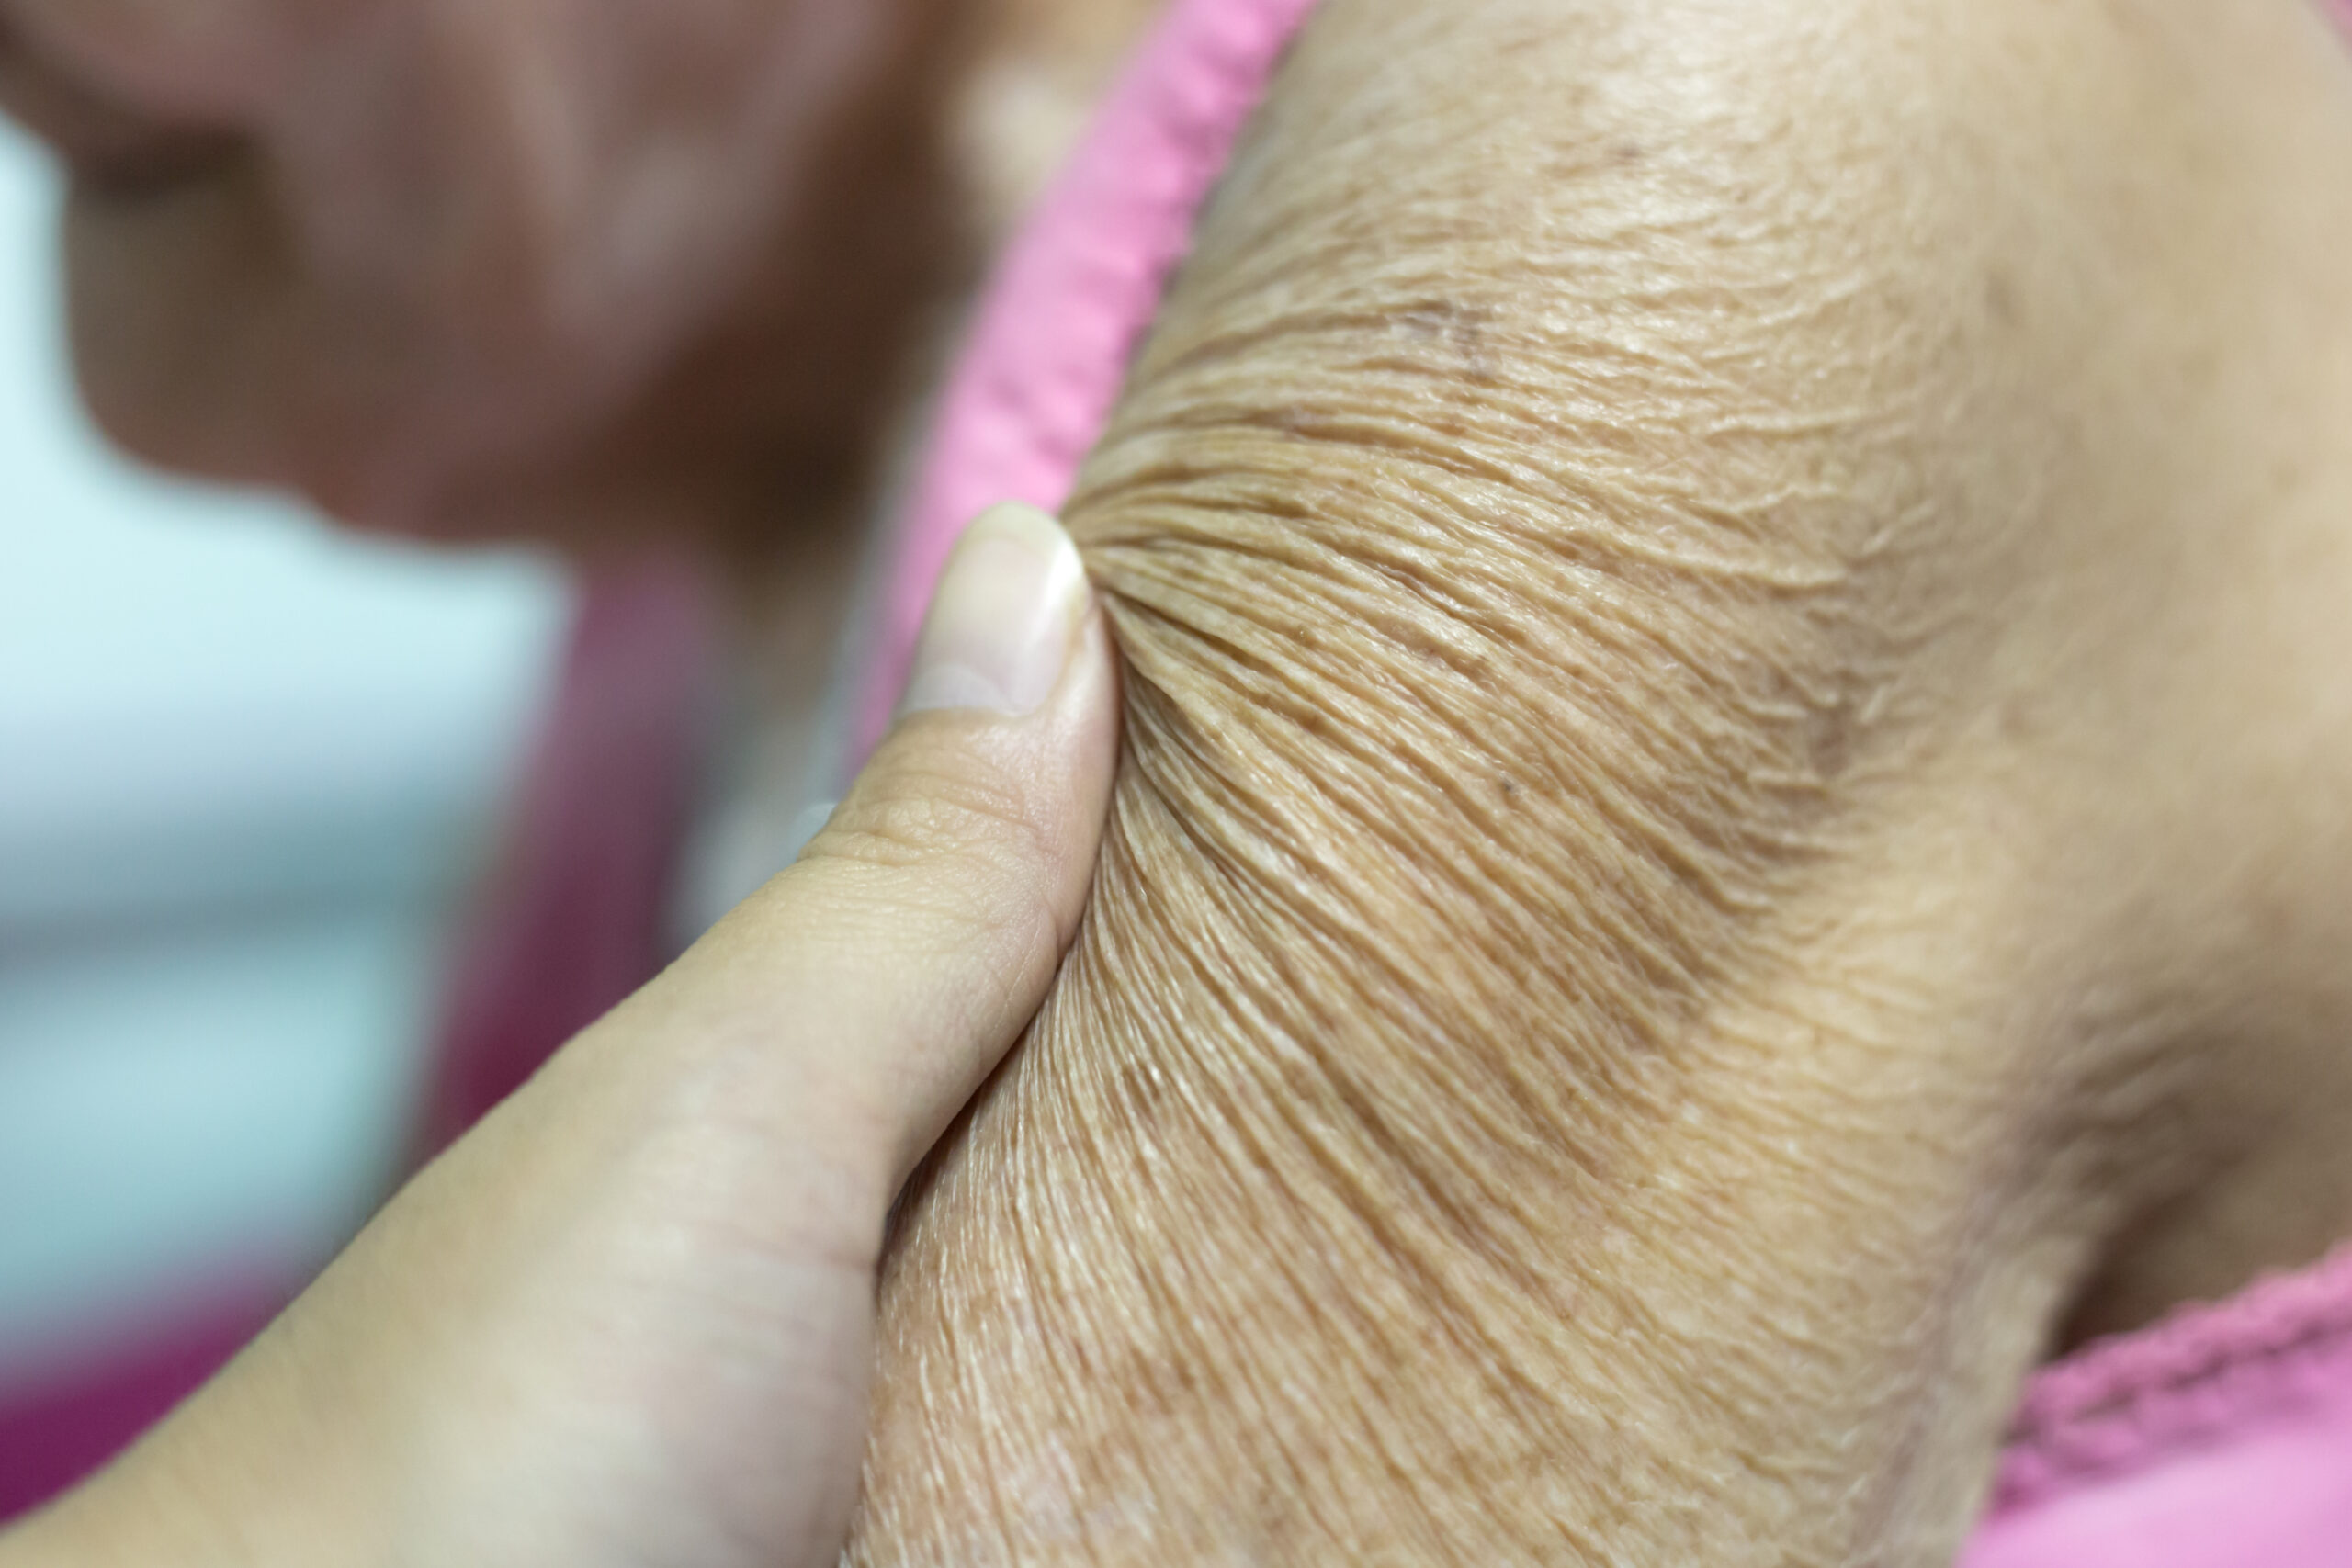 Taking care of elderly skin